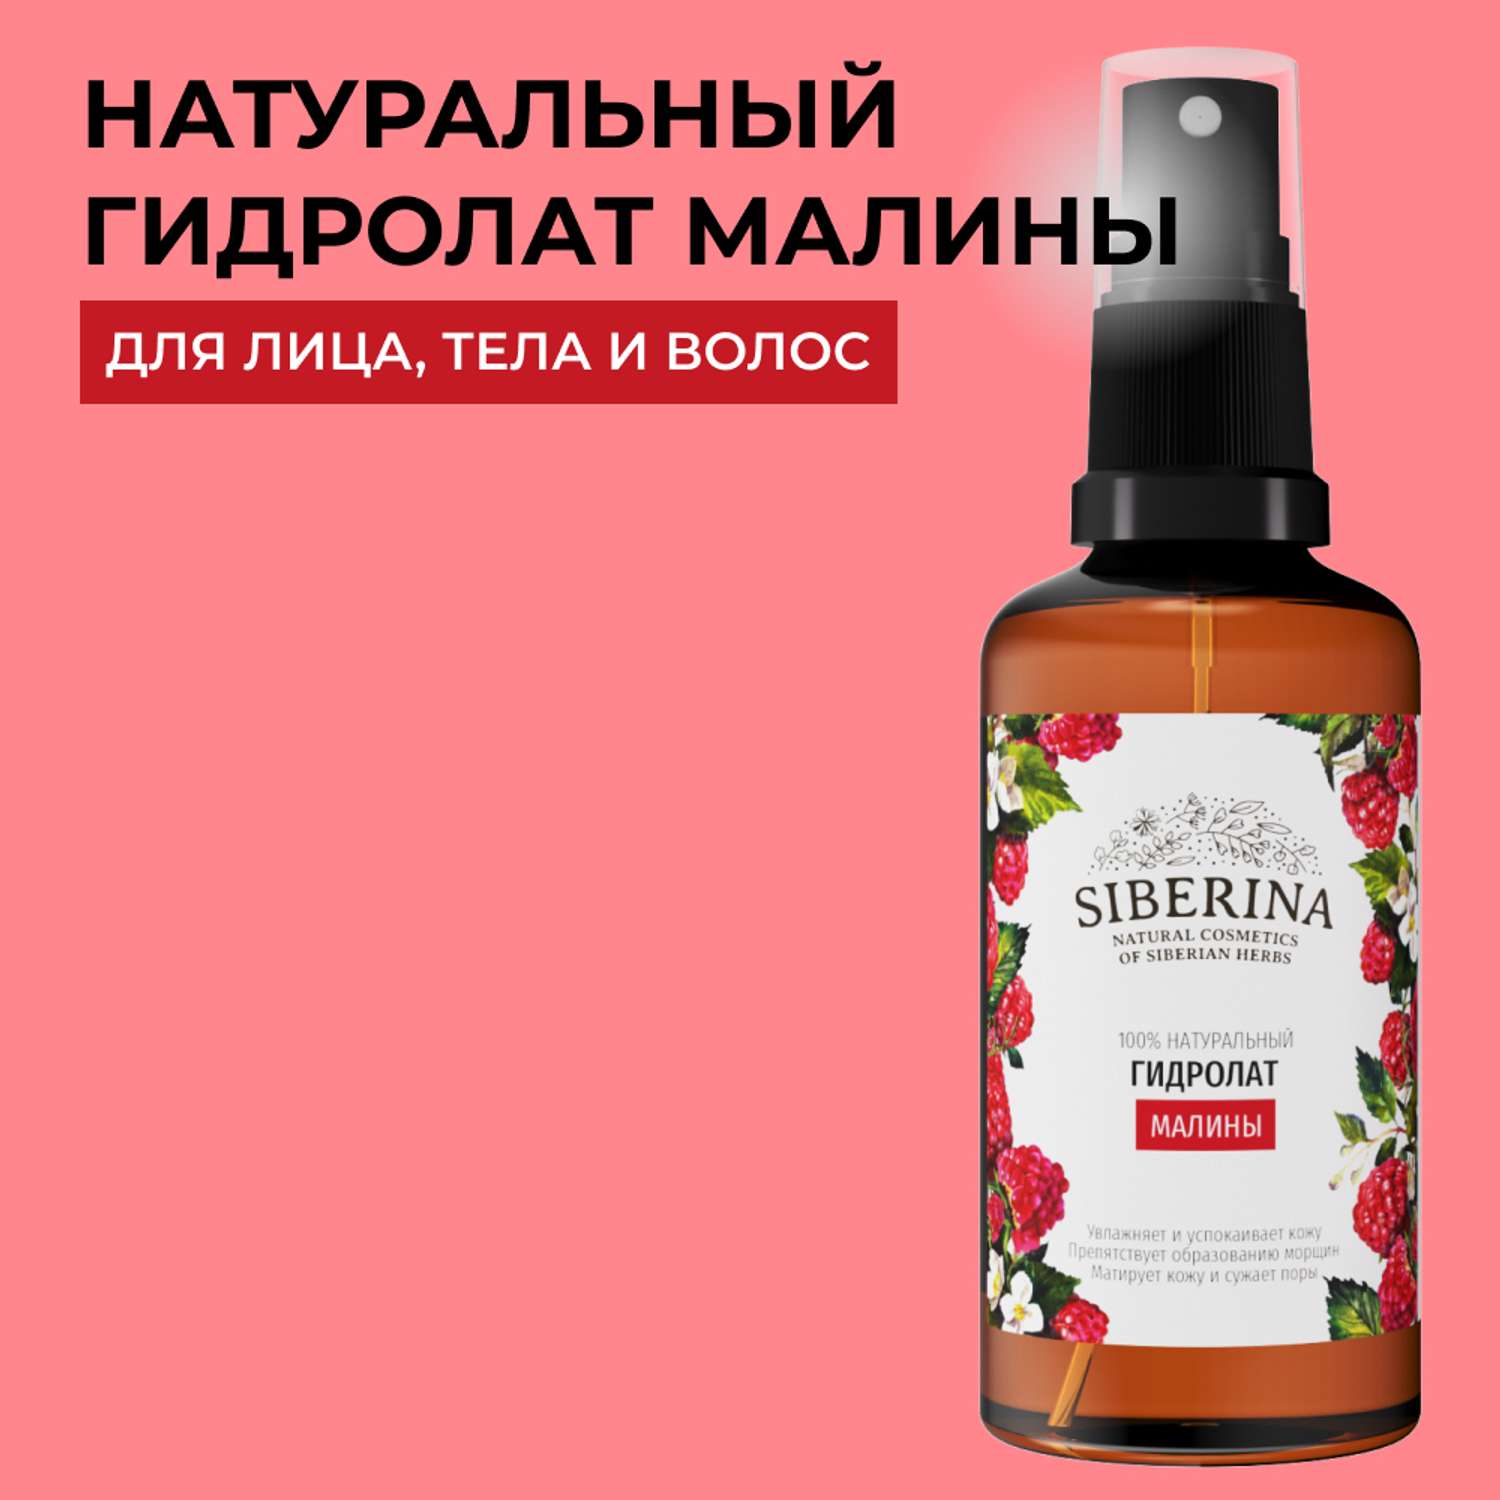 Гидролат Siberina натуральный «Малины» для лица и волос 50 мл - фото 1